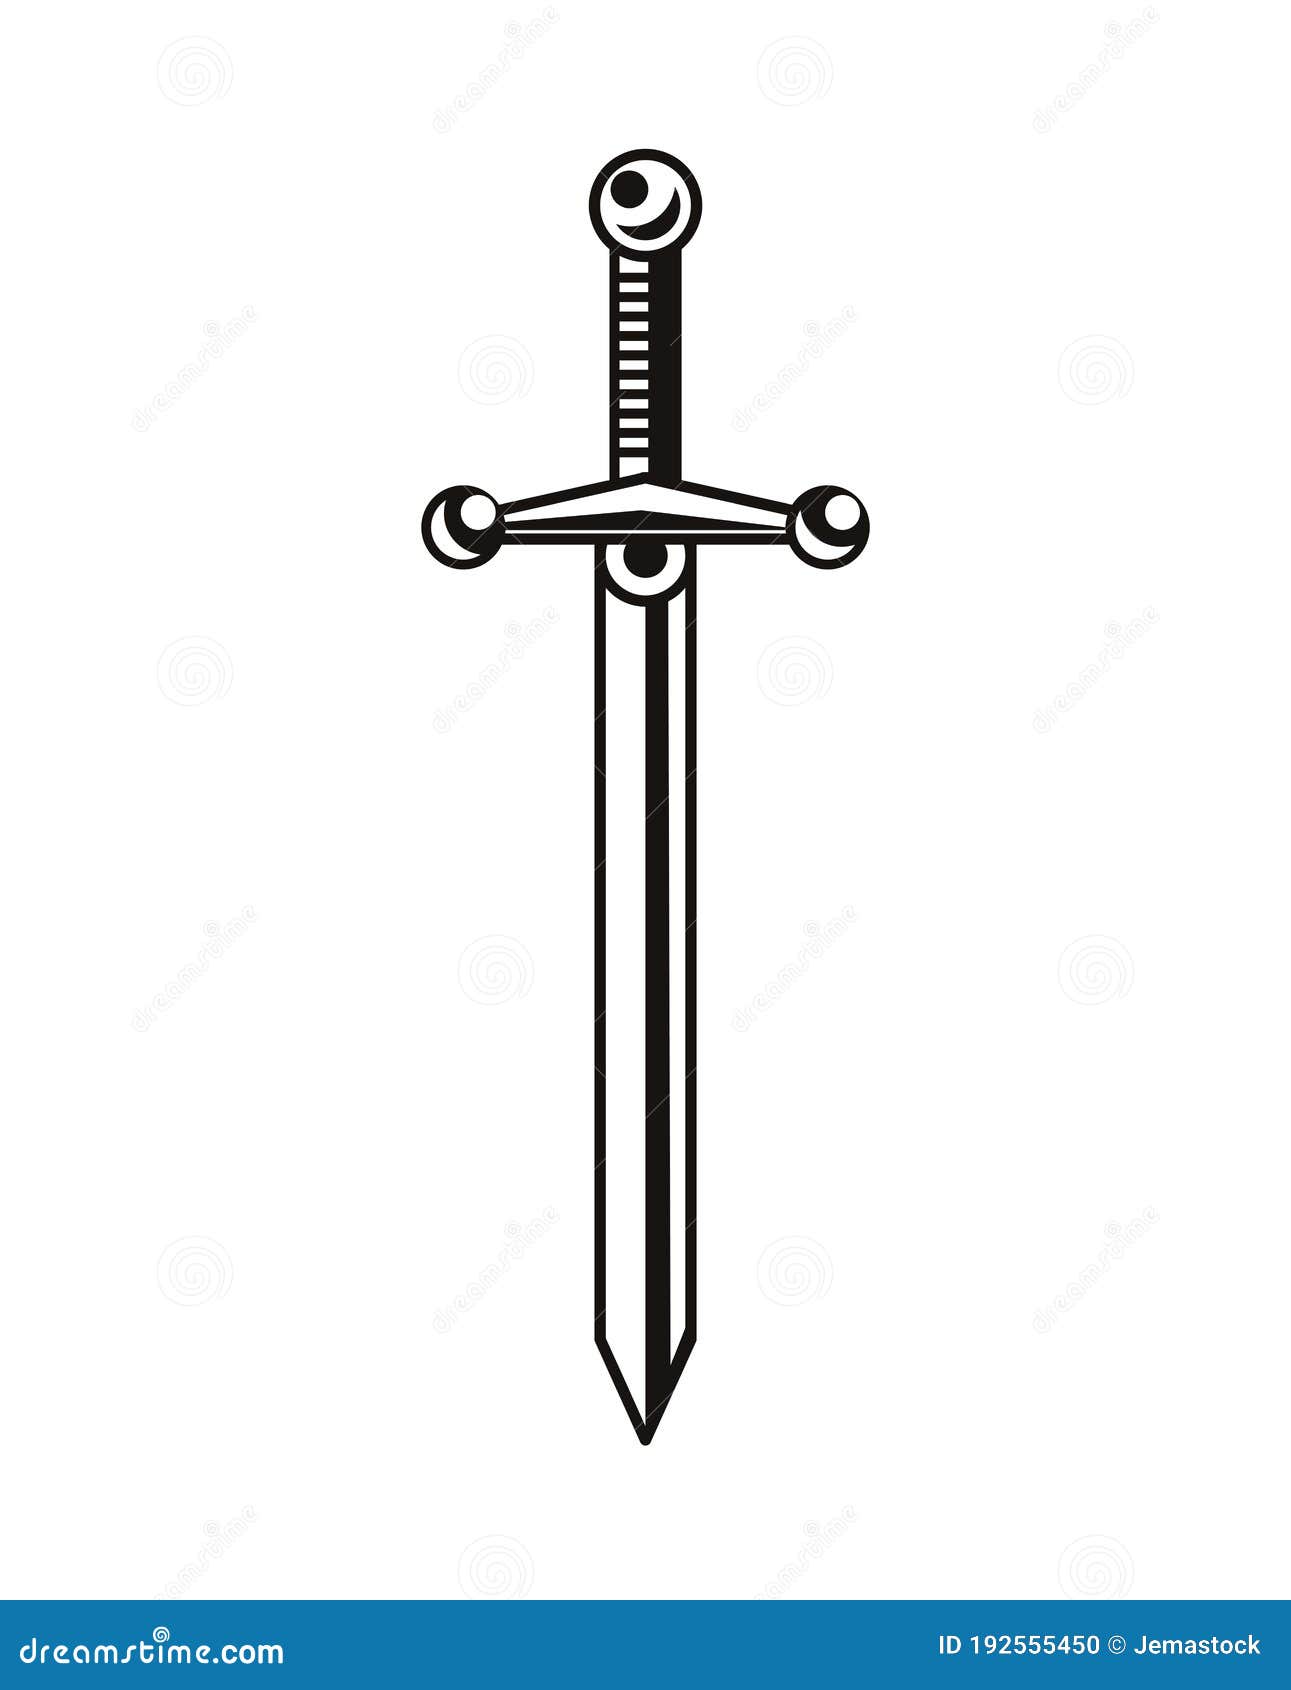 40 Drawing Of Viking Sword Tattoo Illustrations RoyaltyFree Vector  Graphics  Clip Art  iStock